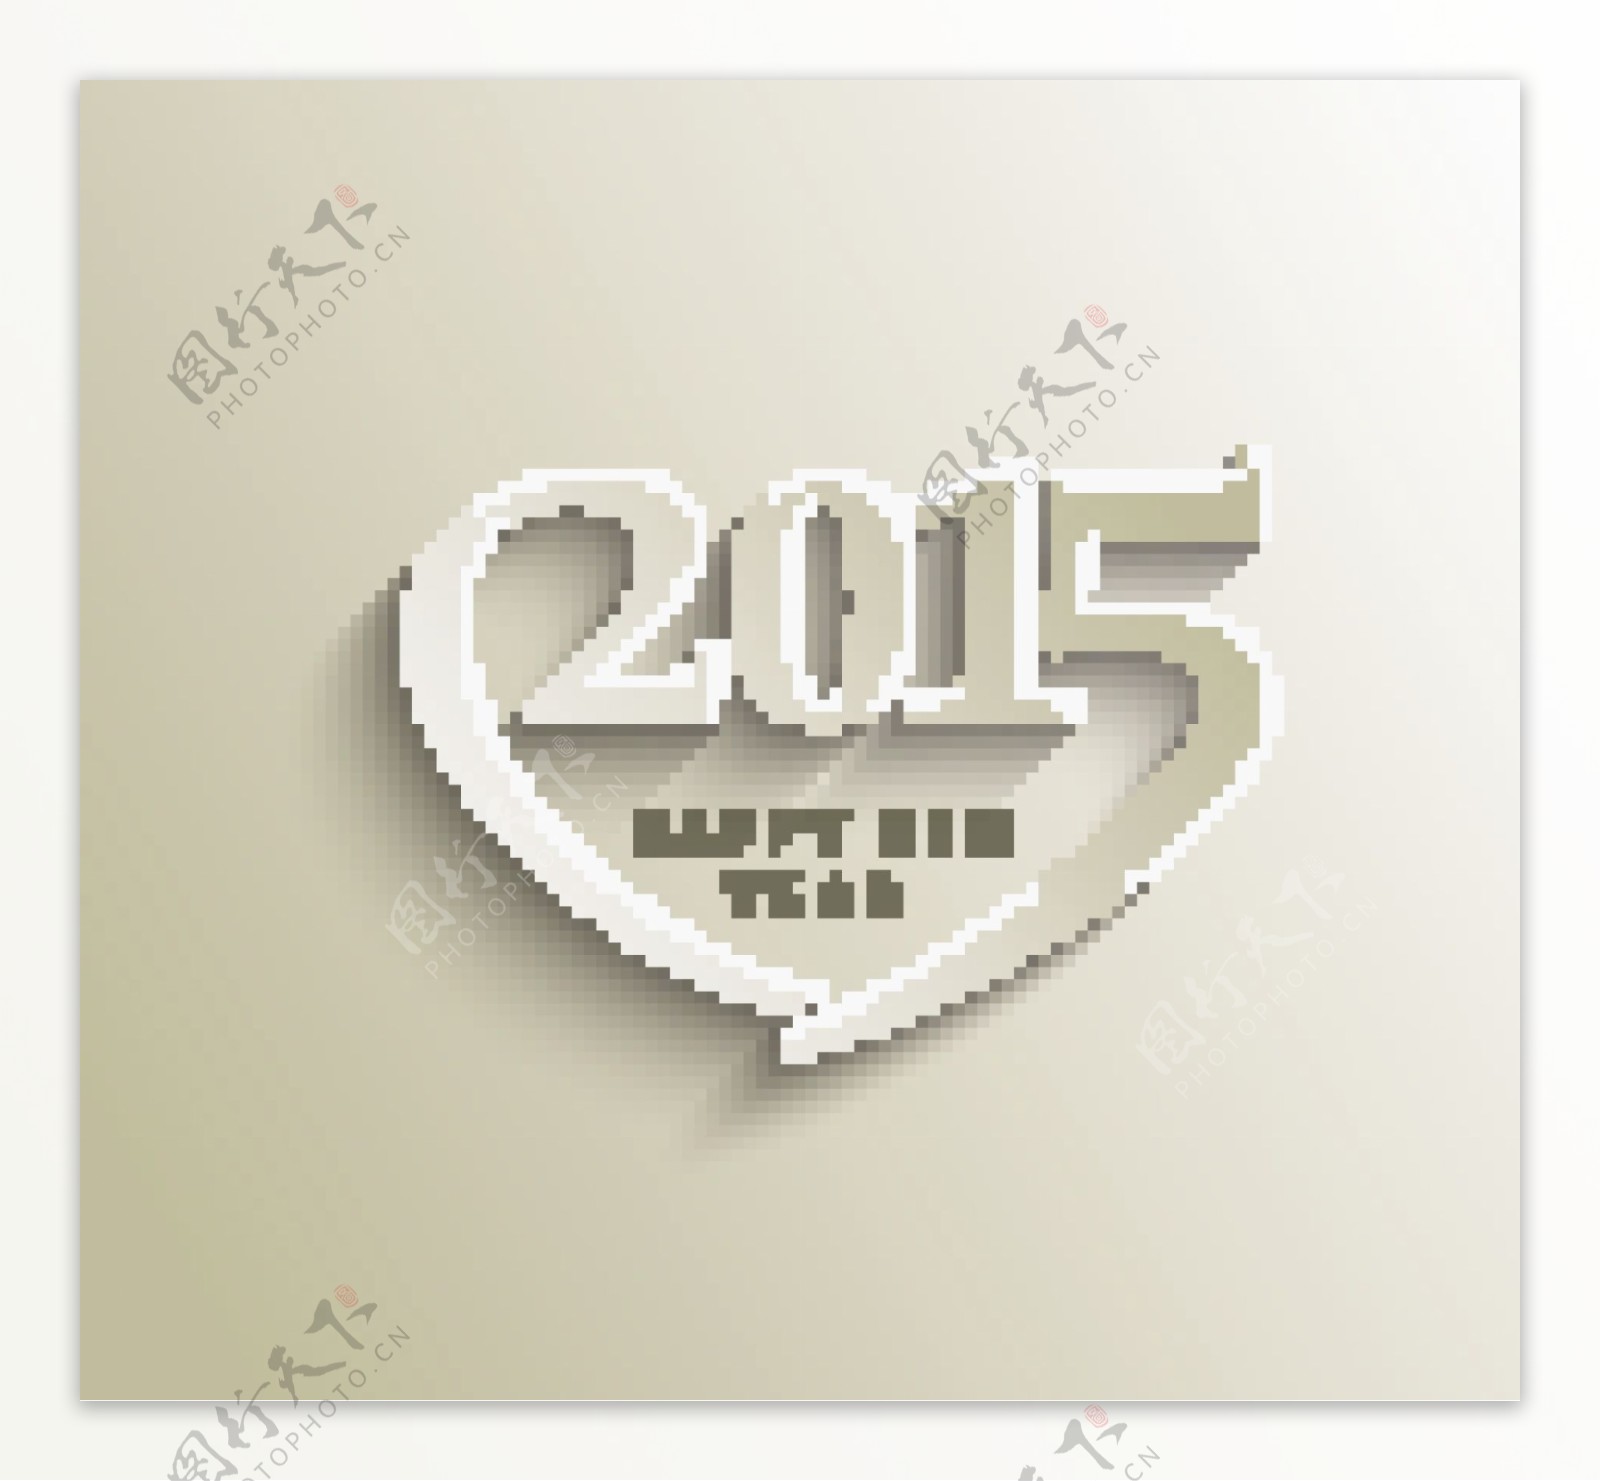 2015数字新年心形创意矢量图